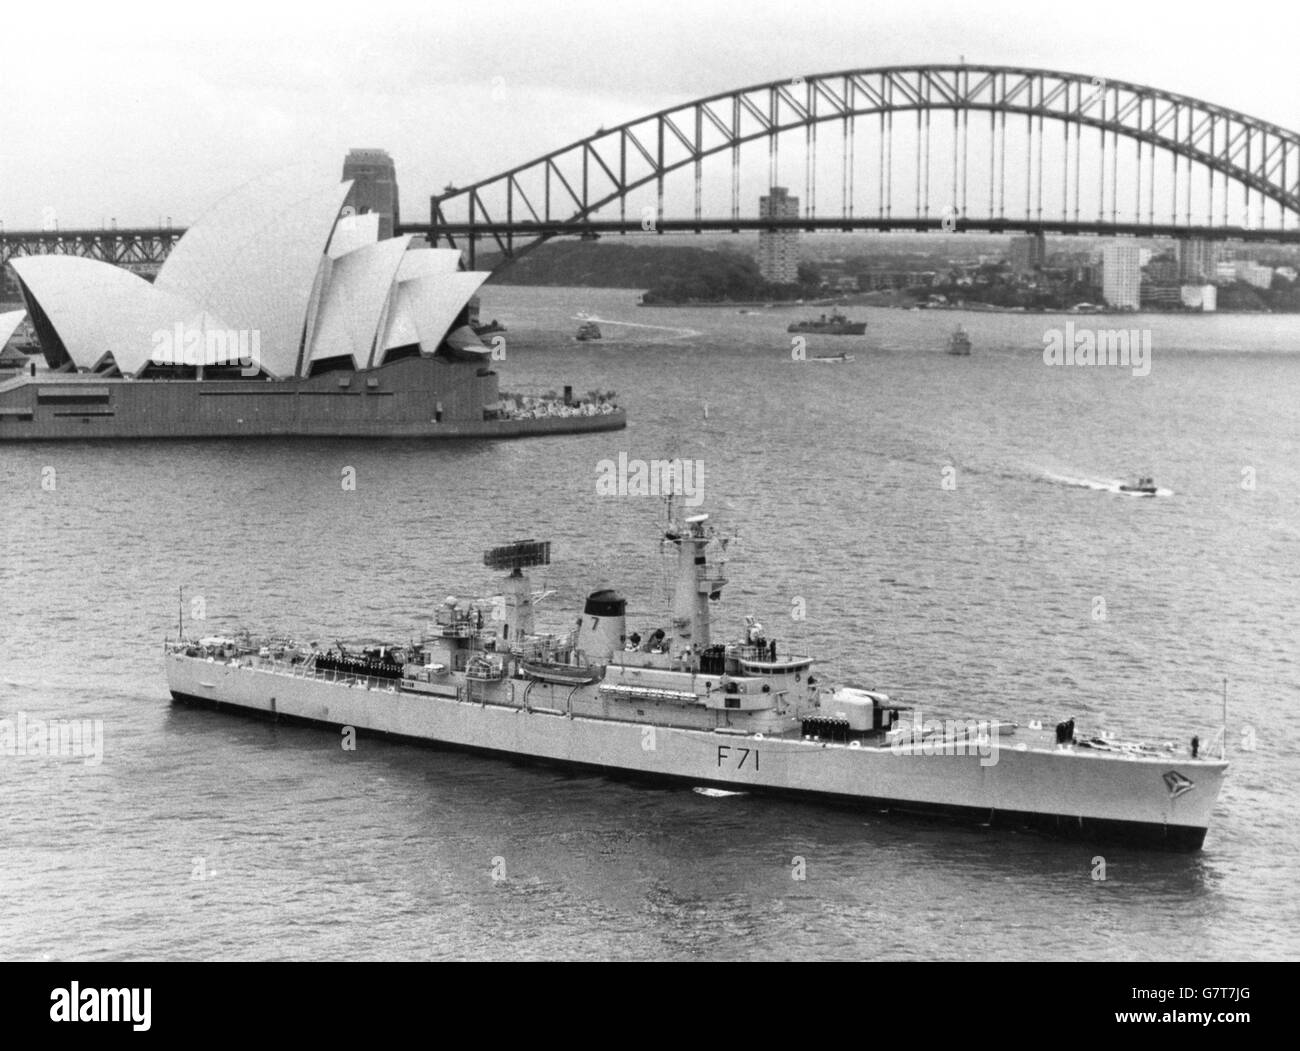 HMS Scylla, l'un des navires du déploiement actuel du Groupe en absence de dix mois depuis les côtes britanniques, lors de sa visite à l'île royale de Sydney, qui est à quelques pas du célèbre pont portuaire et de l'Opéra. Avec des visites en Afrique, dans le Golfe, à Singapour, à Hong Kong, en Indonésie et en Nouvelle-Zélande, l'escadron devrait rentrer en novembre. Banque D'Images